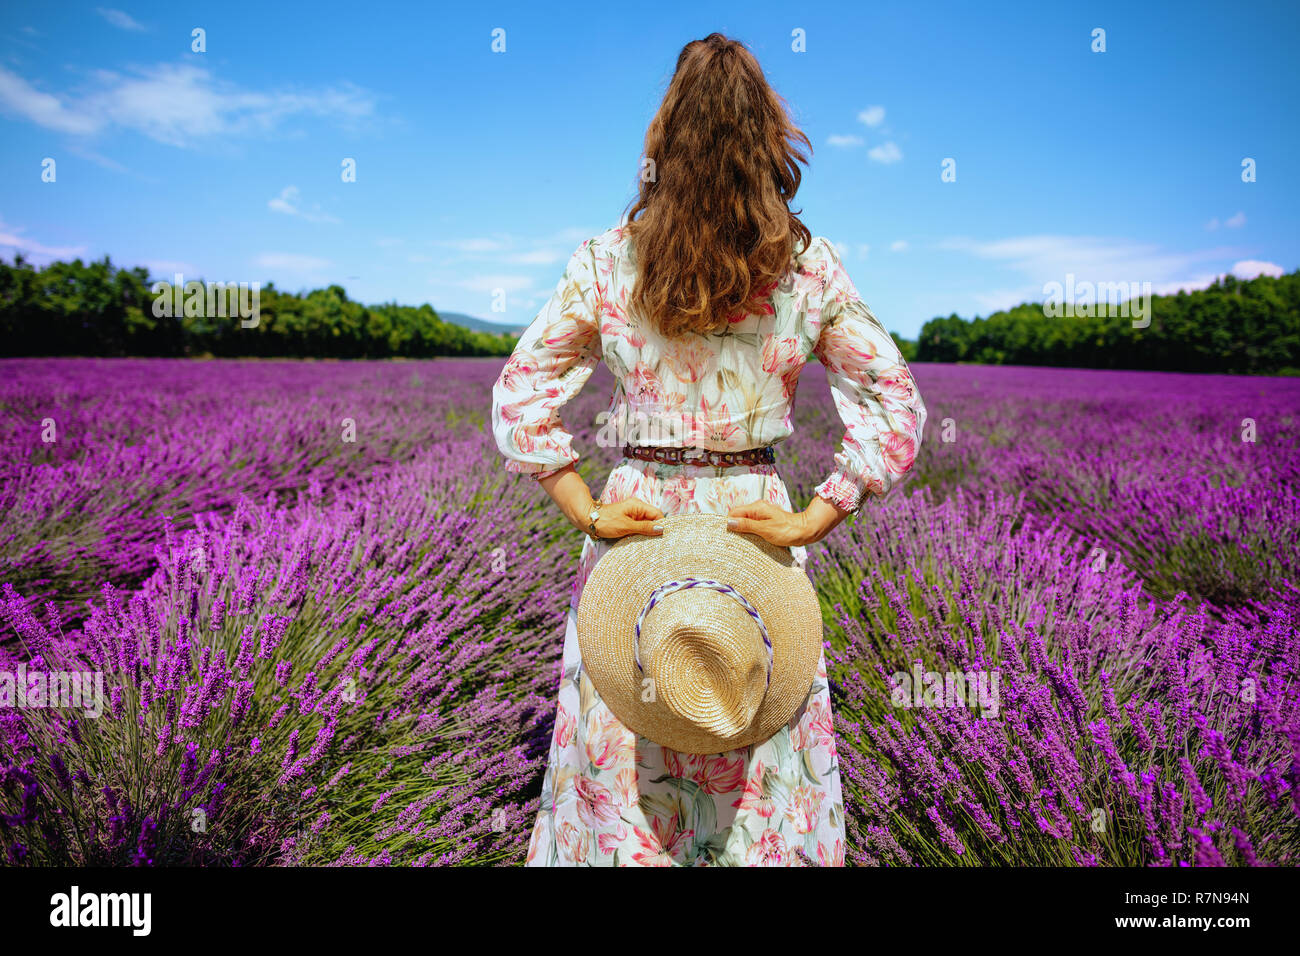 Hinter der eleganten Frau in geblümten Kleid mit Stroh Hut gegen Lavendelfeld in der Provence, Frankreich. Frau genießen unwiderstehlichen Charme von Frankreich gesehen Stockfoto